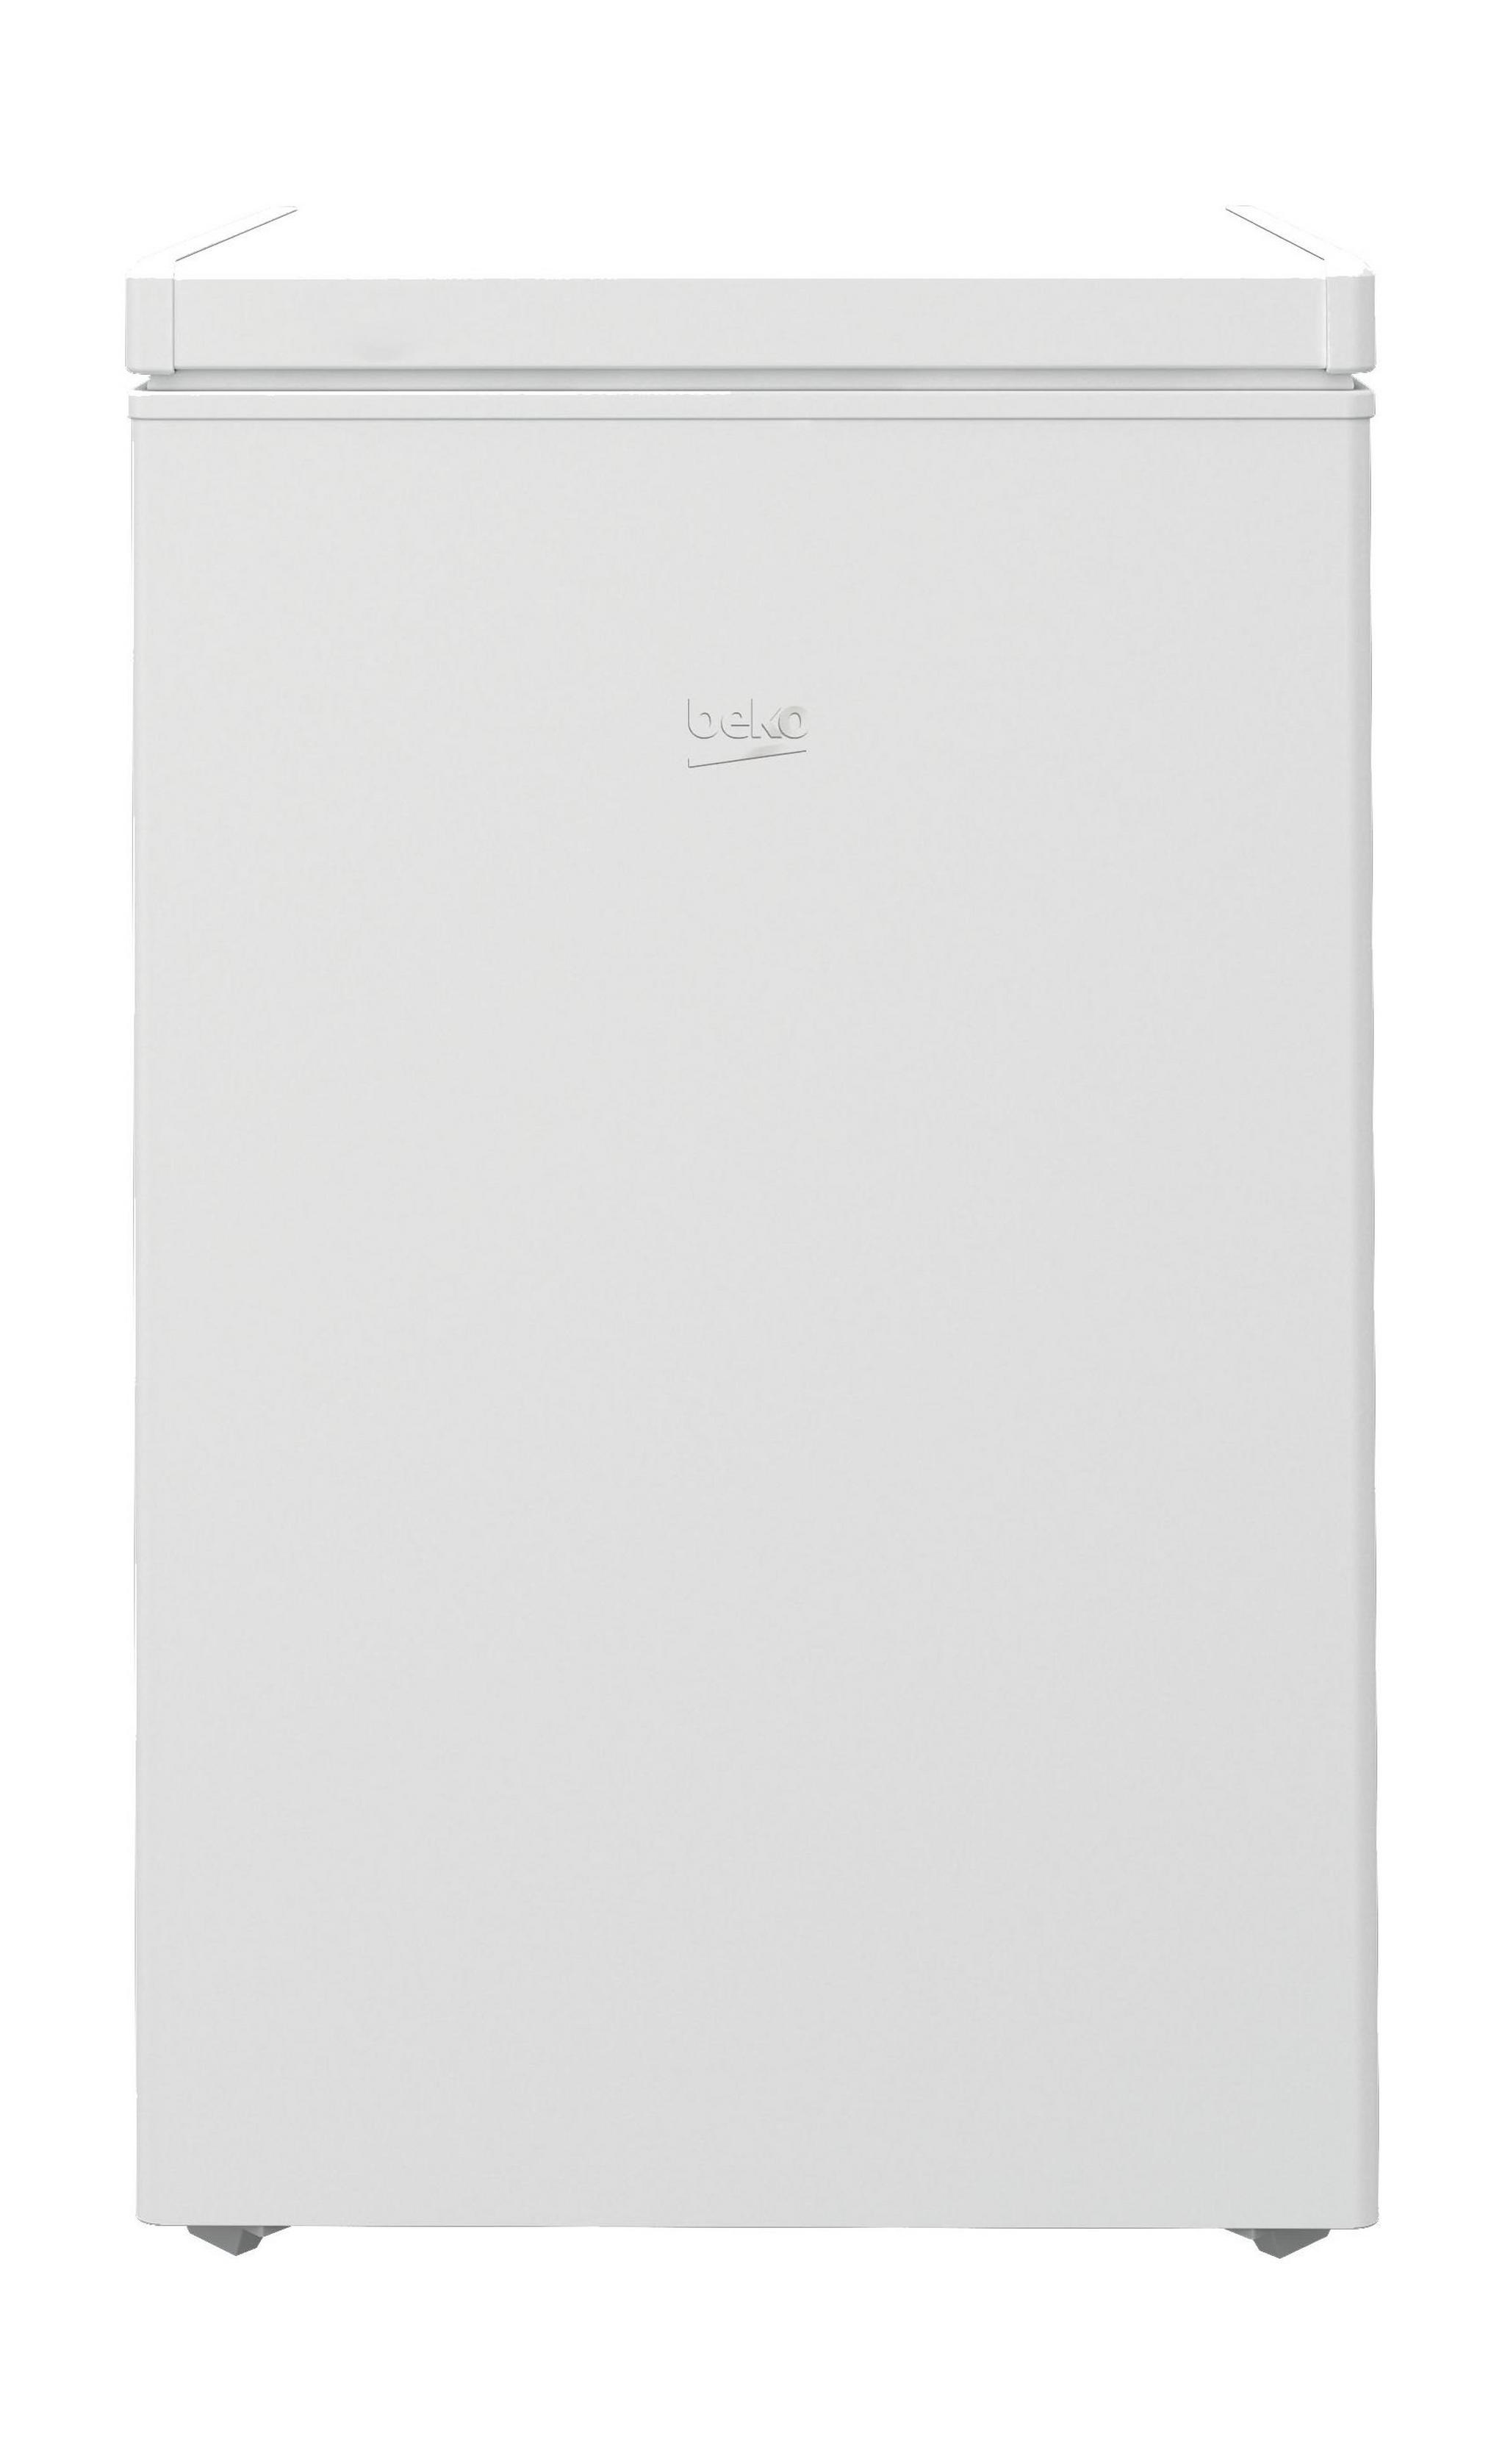 Beko 4-Cft Chest Freezer (HS210520) - White